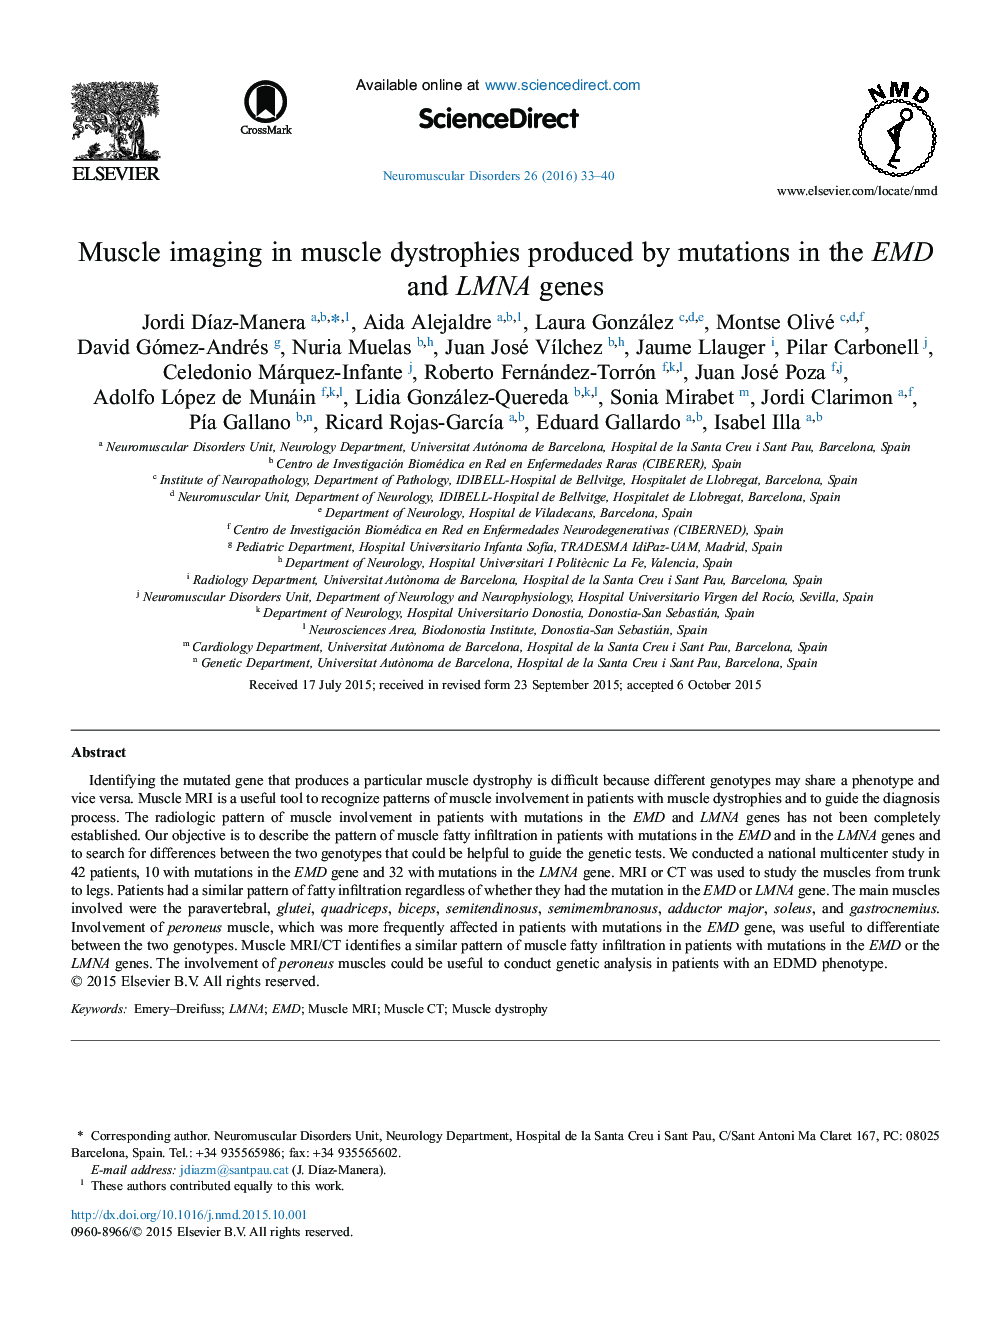 تصویر برداری عضله در دیستروفی عضله تولید شده توسط جهش در ژن EMD و LMNA